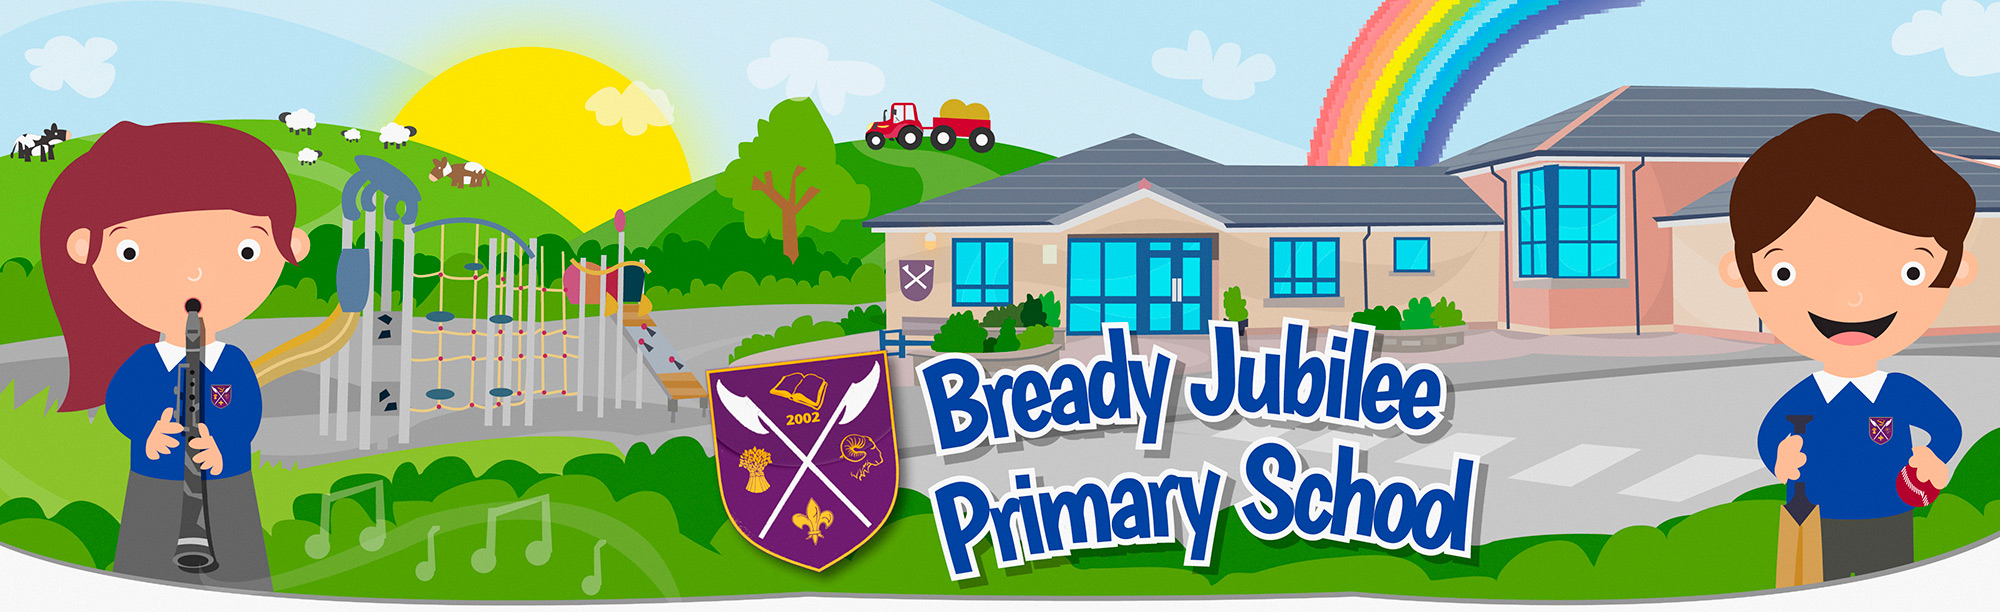 Bready Jubilee Primary School, Strabane